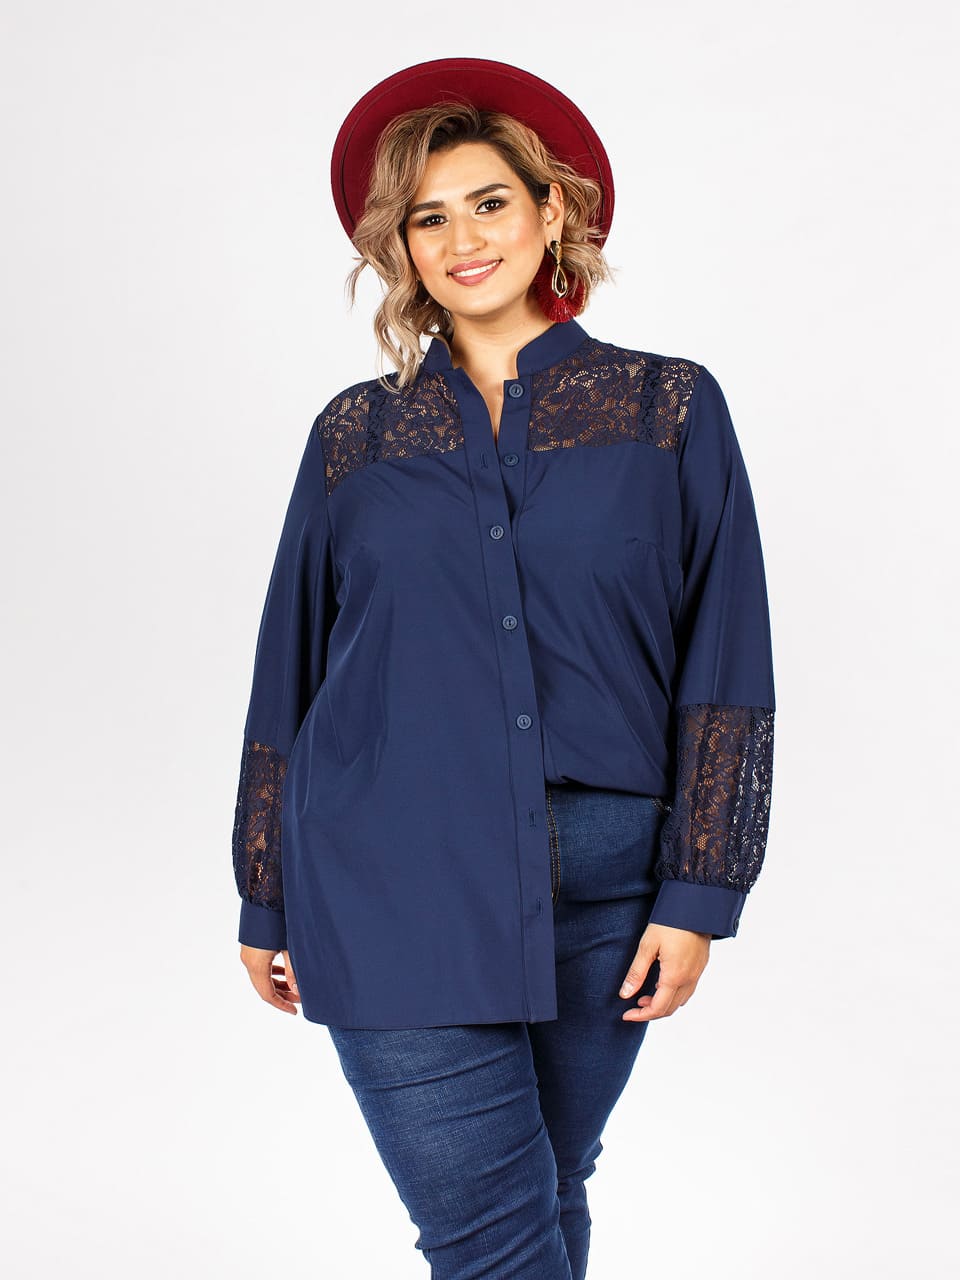 Приталенная блузка с гипюровыми вставками, темно-синяя